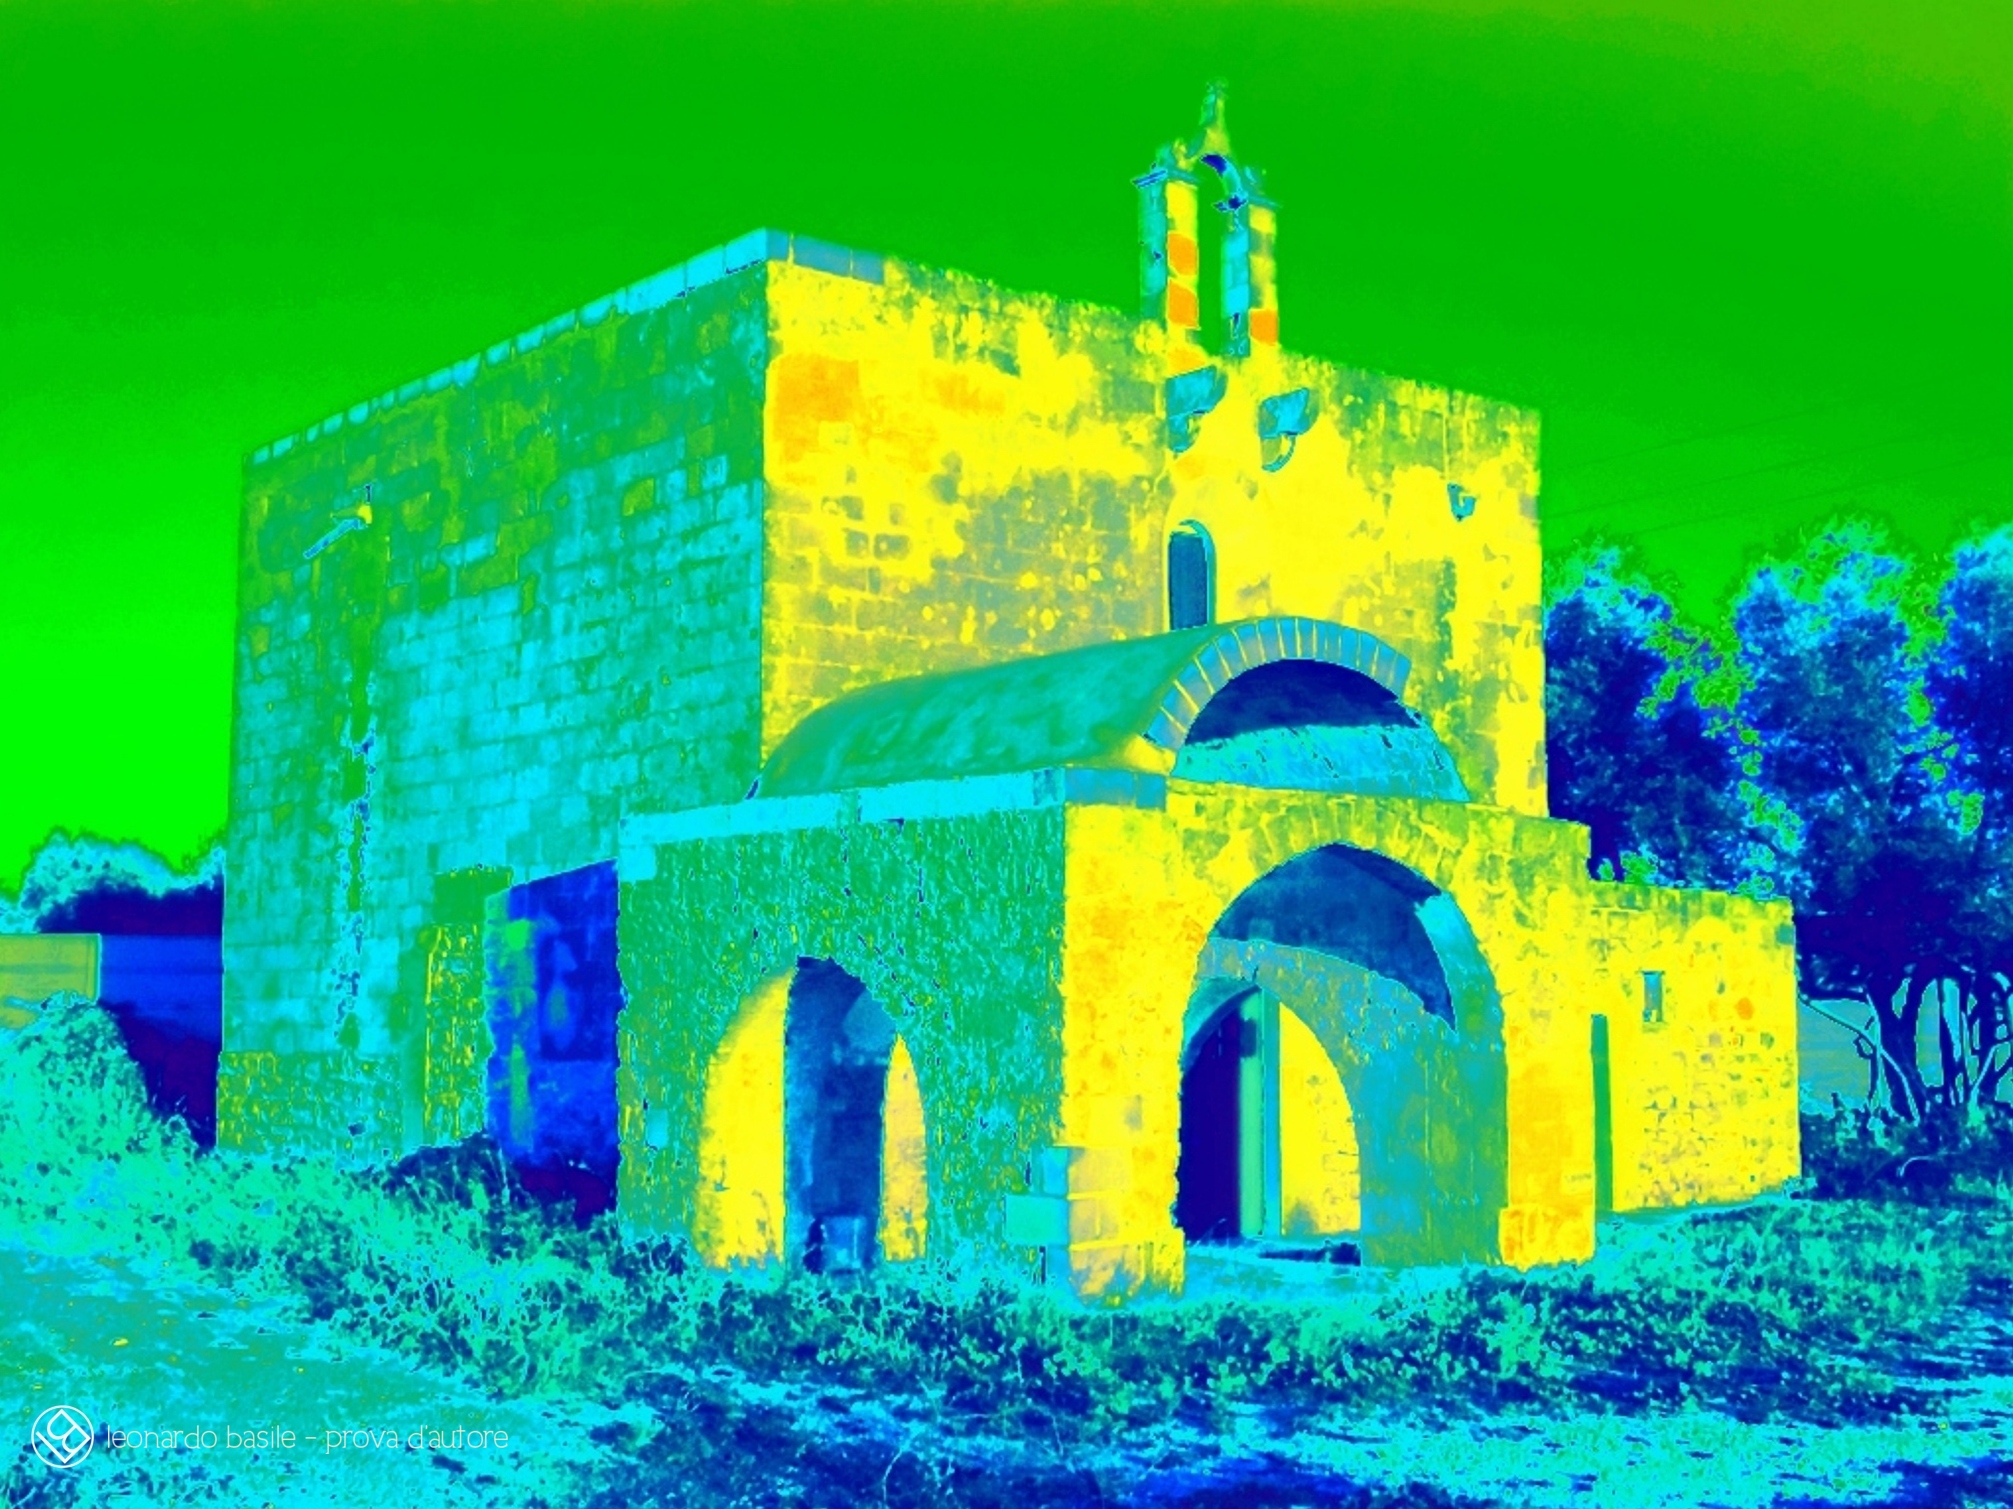 Elaborazione grafica da una fotografia della Chiesa medievale dell'Annunziata di Bari/S.Spirito- 2